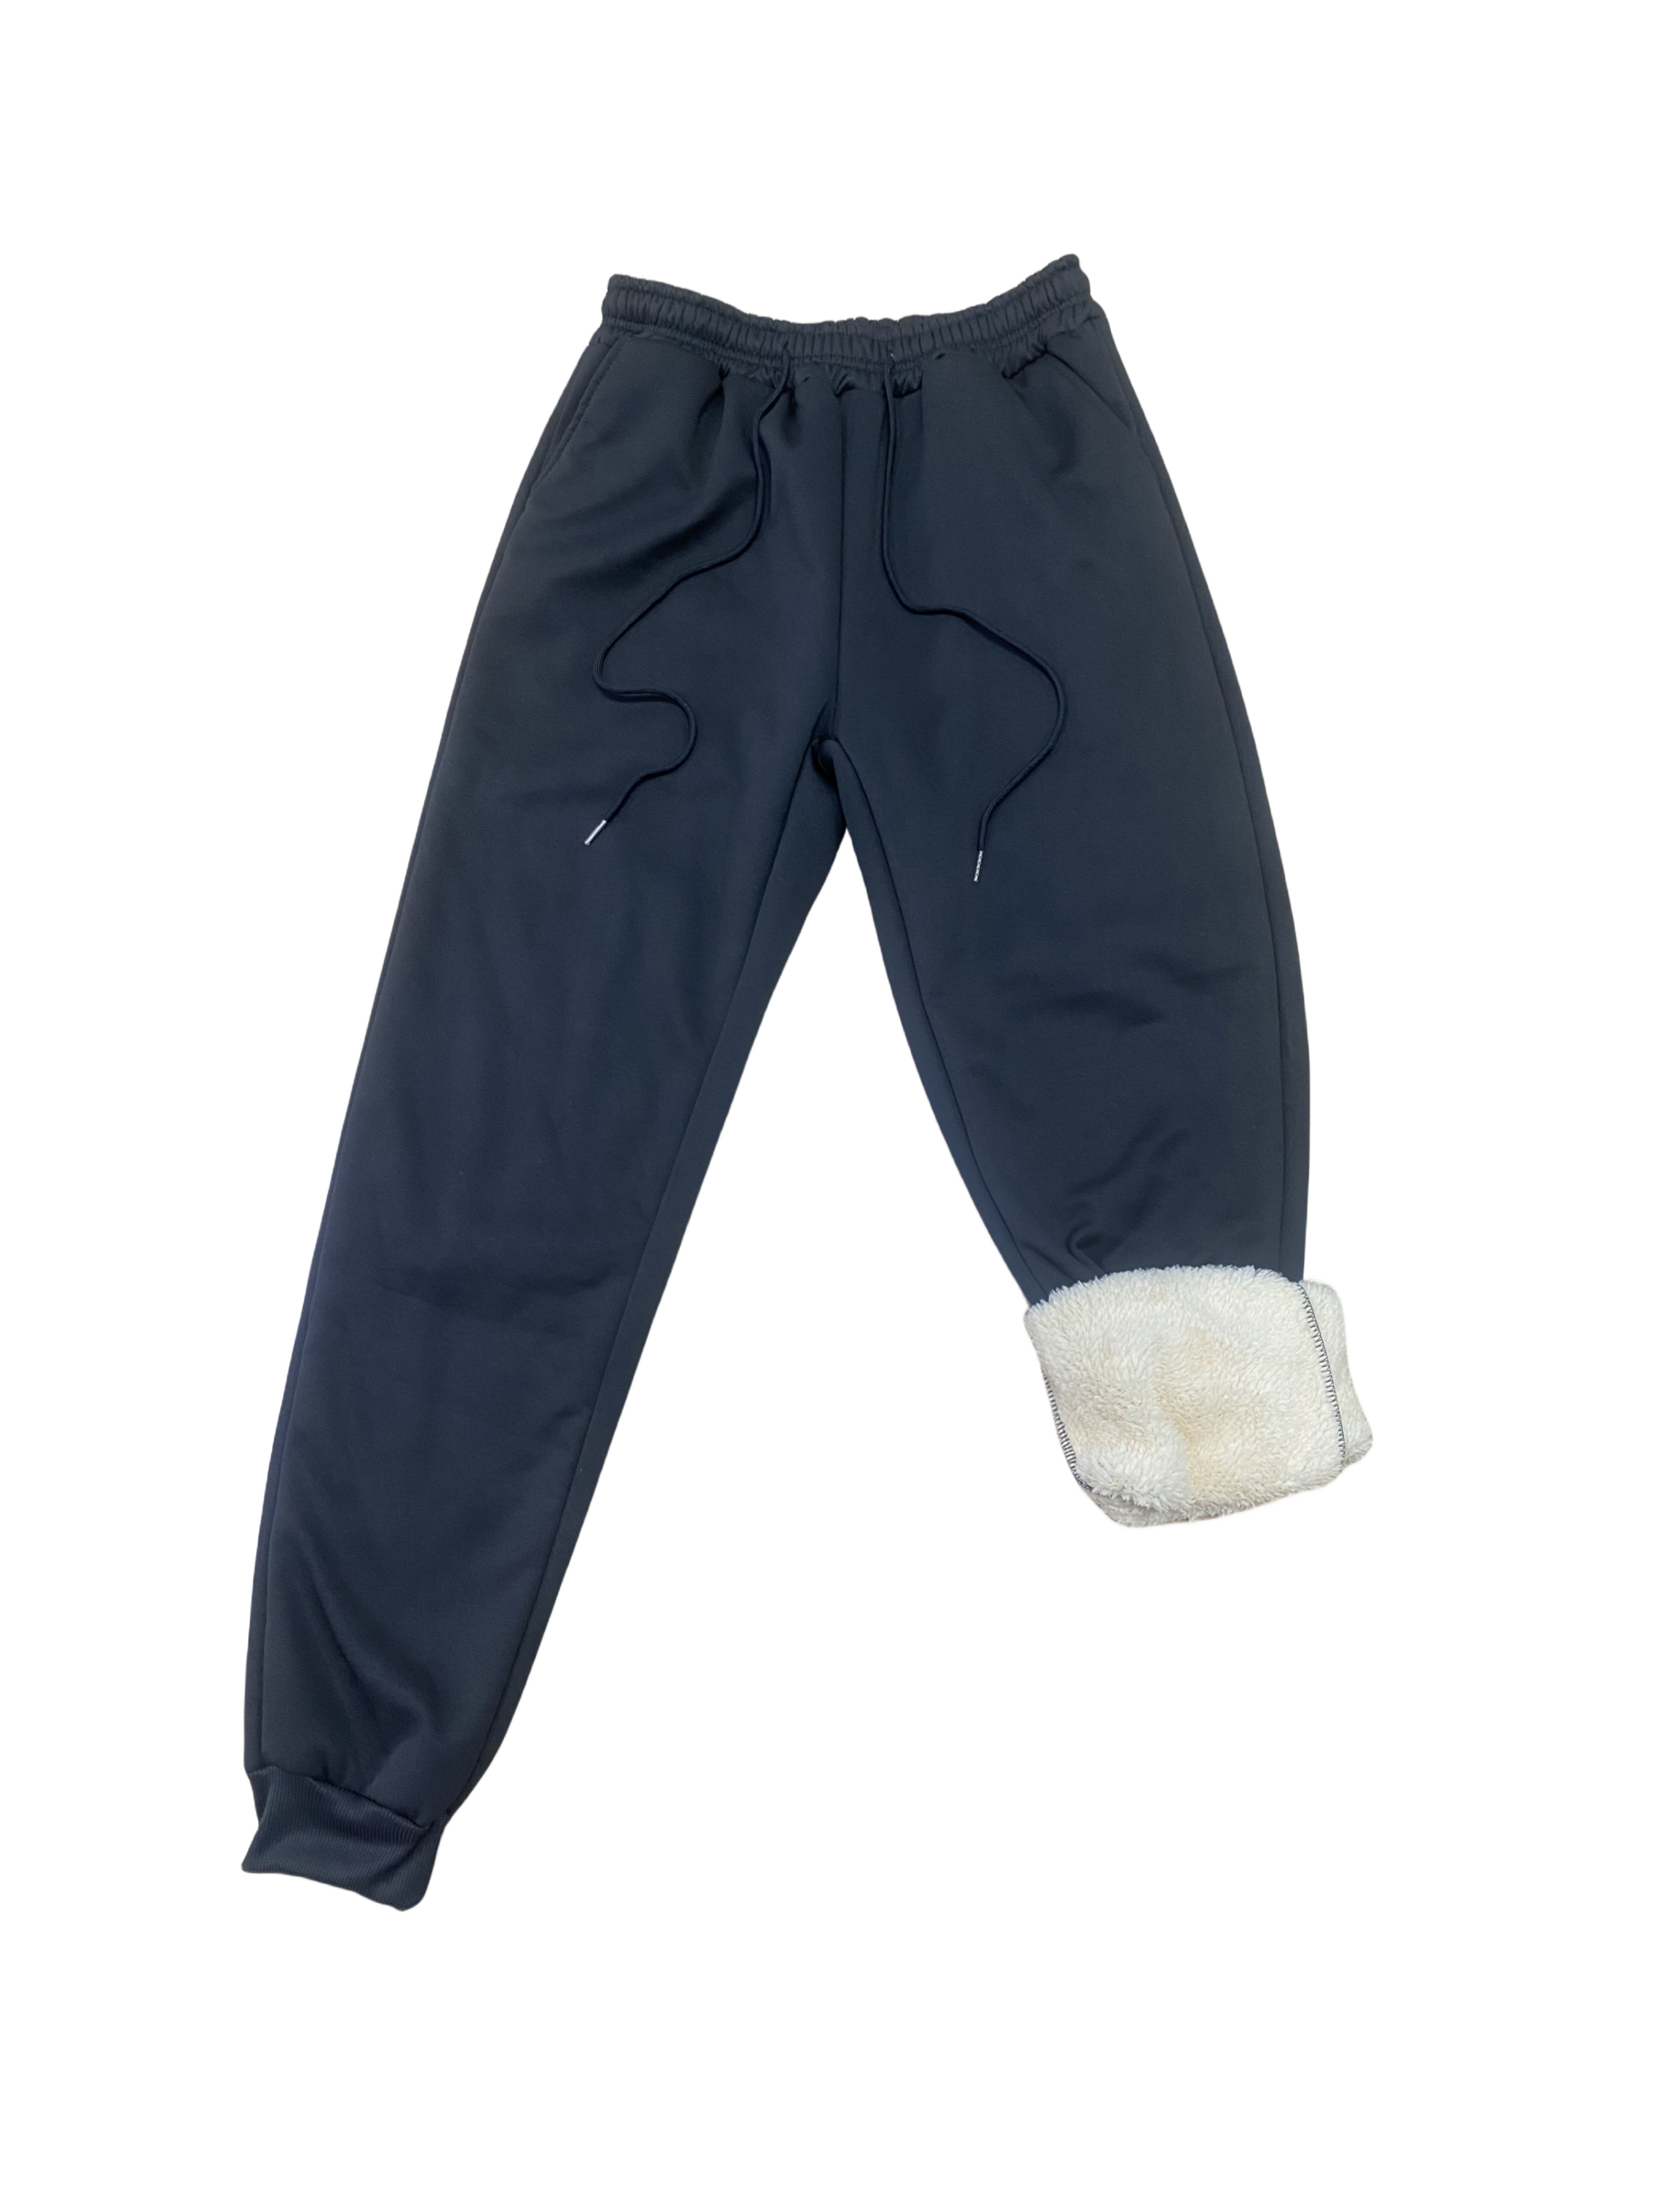 10 pantalones térmicos de hombre para no pasar nunca frío